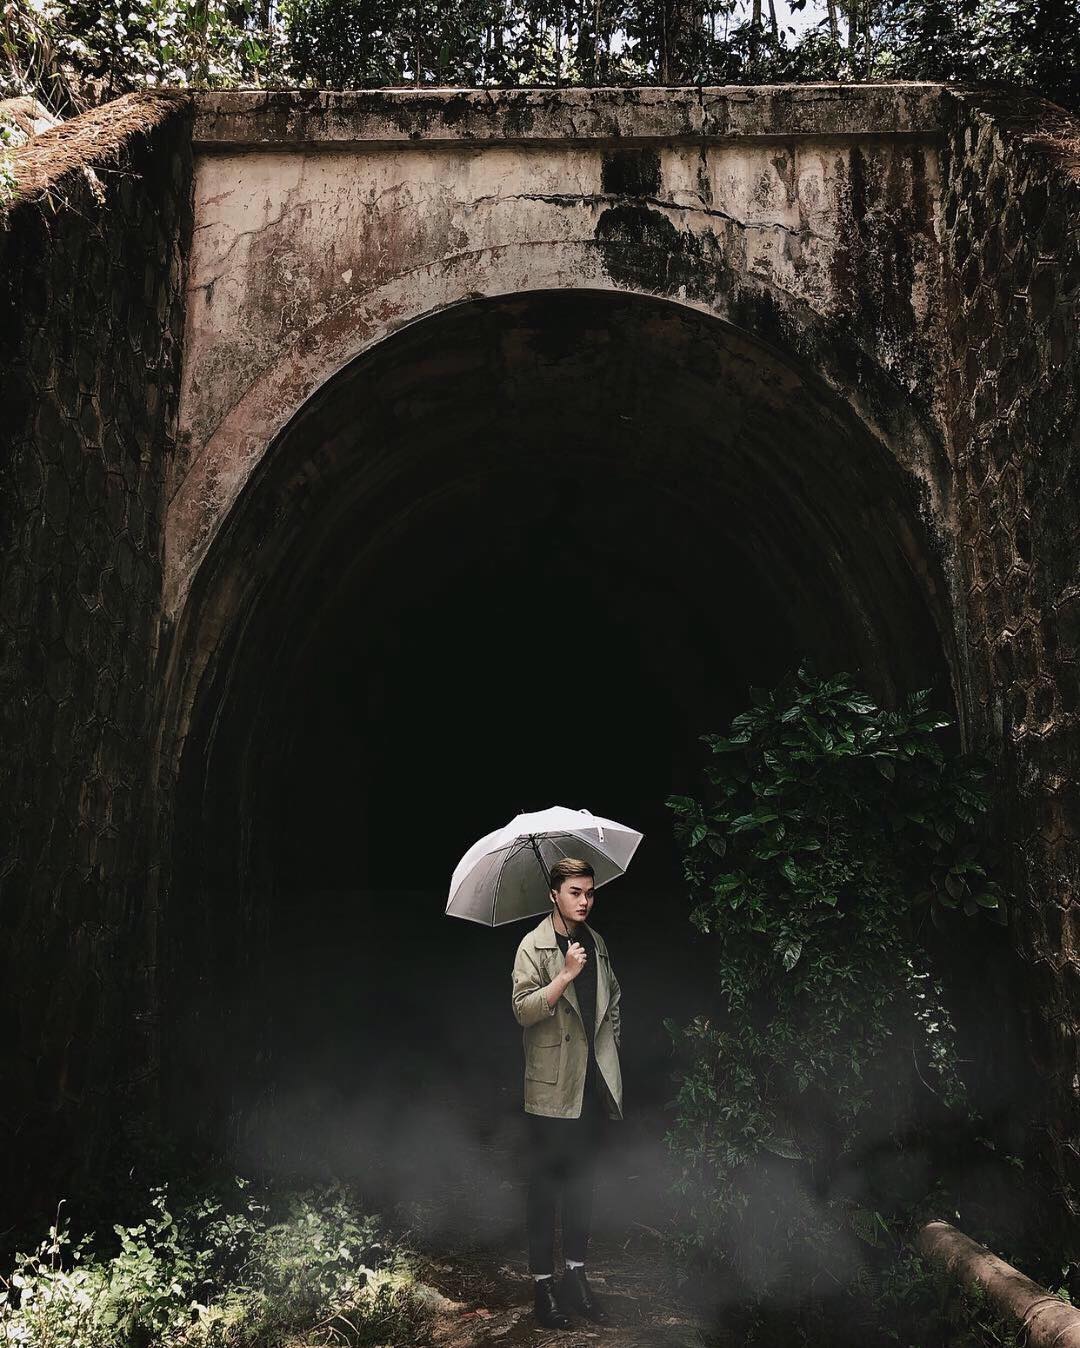 Đường hầm xe lửa cổ Đà Lạt - Địa điểm check in nổi tiếng tại Đà Lạt 2